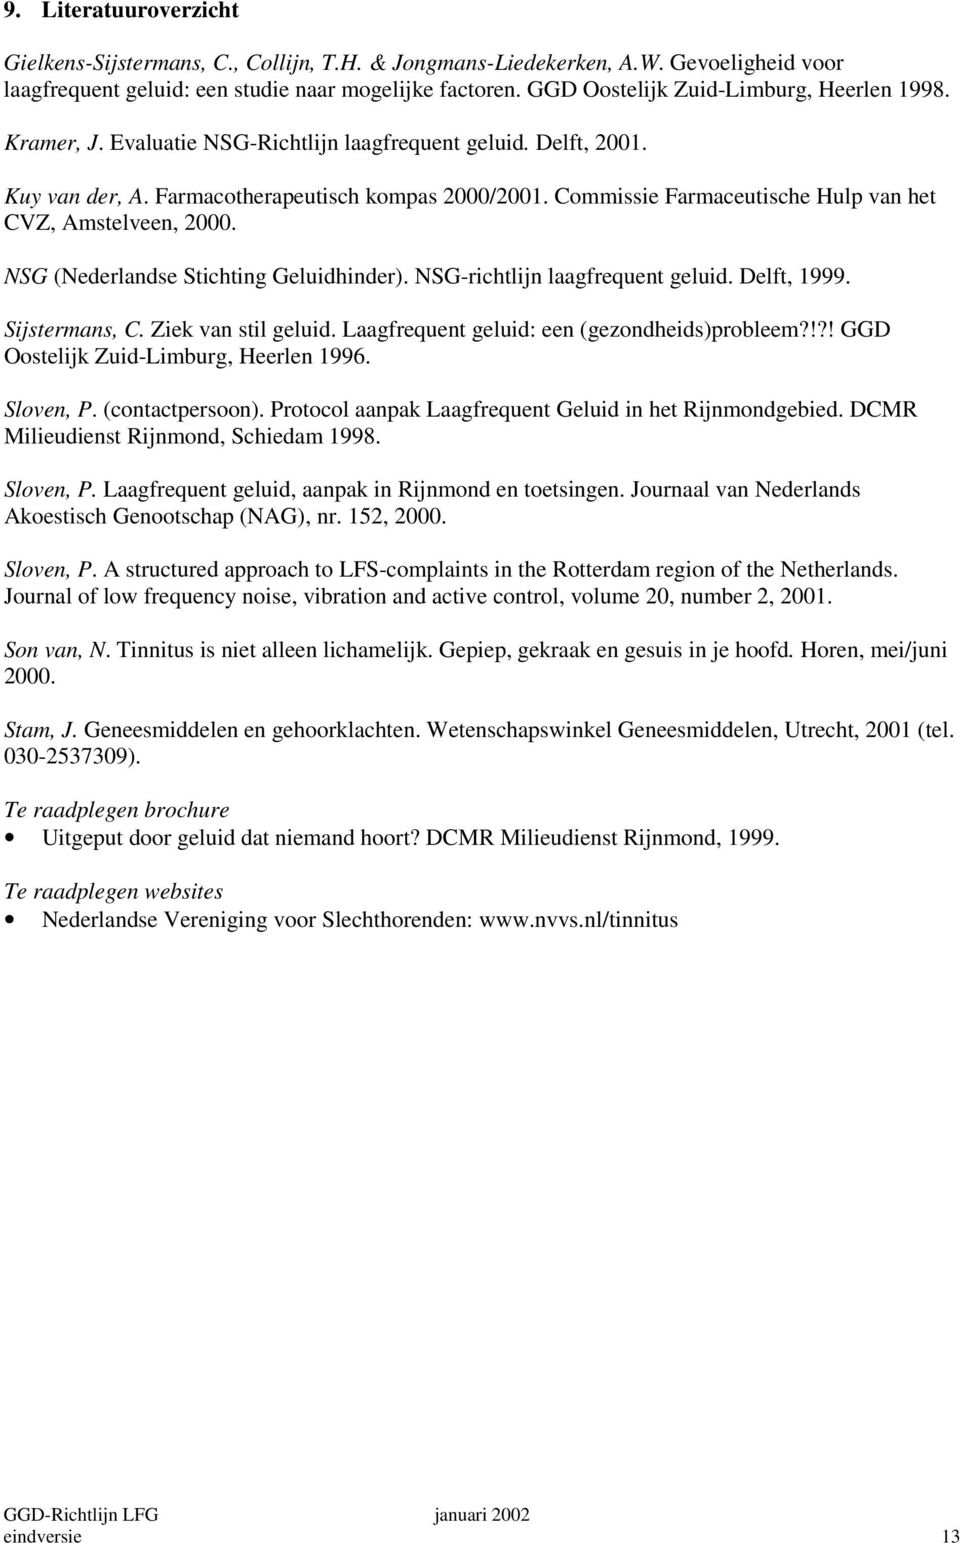 Commissie Farmaceutische Hulp van het CVZ, Amstelveen, 2000. NSG (Nederlandse Stichting Geluidhinder). NSG-richtlijn laagfrequent geluid. Delft, 1999. Sijstermans, C. Ziek van stil geluid.